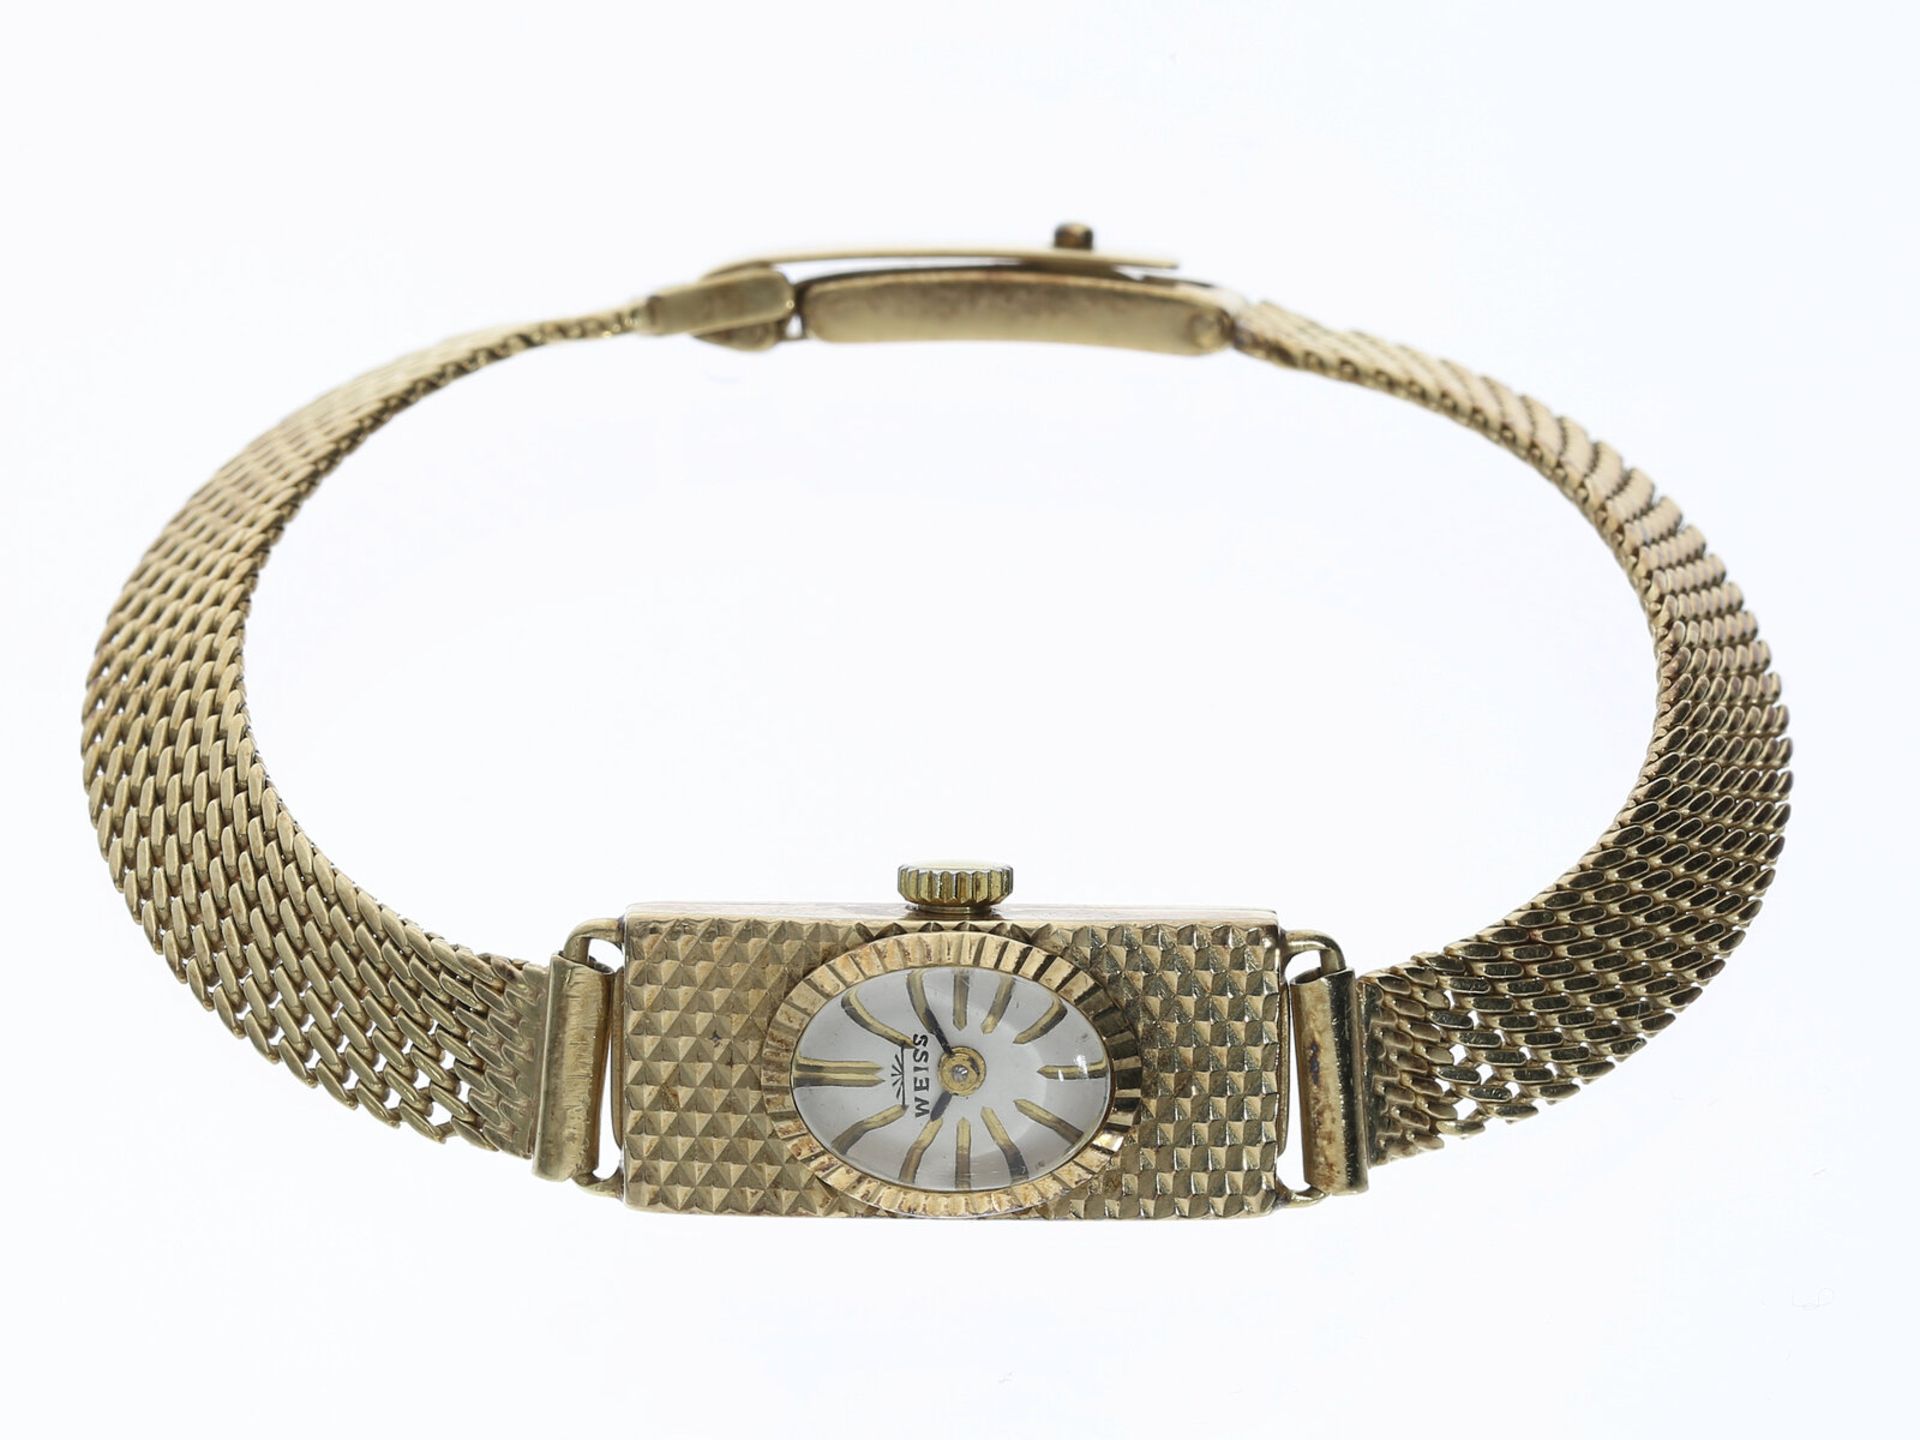 Armbanduhr: Goldene vintage Damenuhr der Marke Weiss, 14K Gold